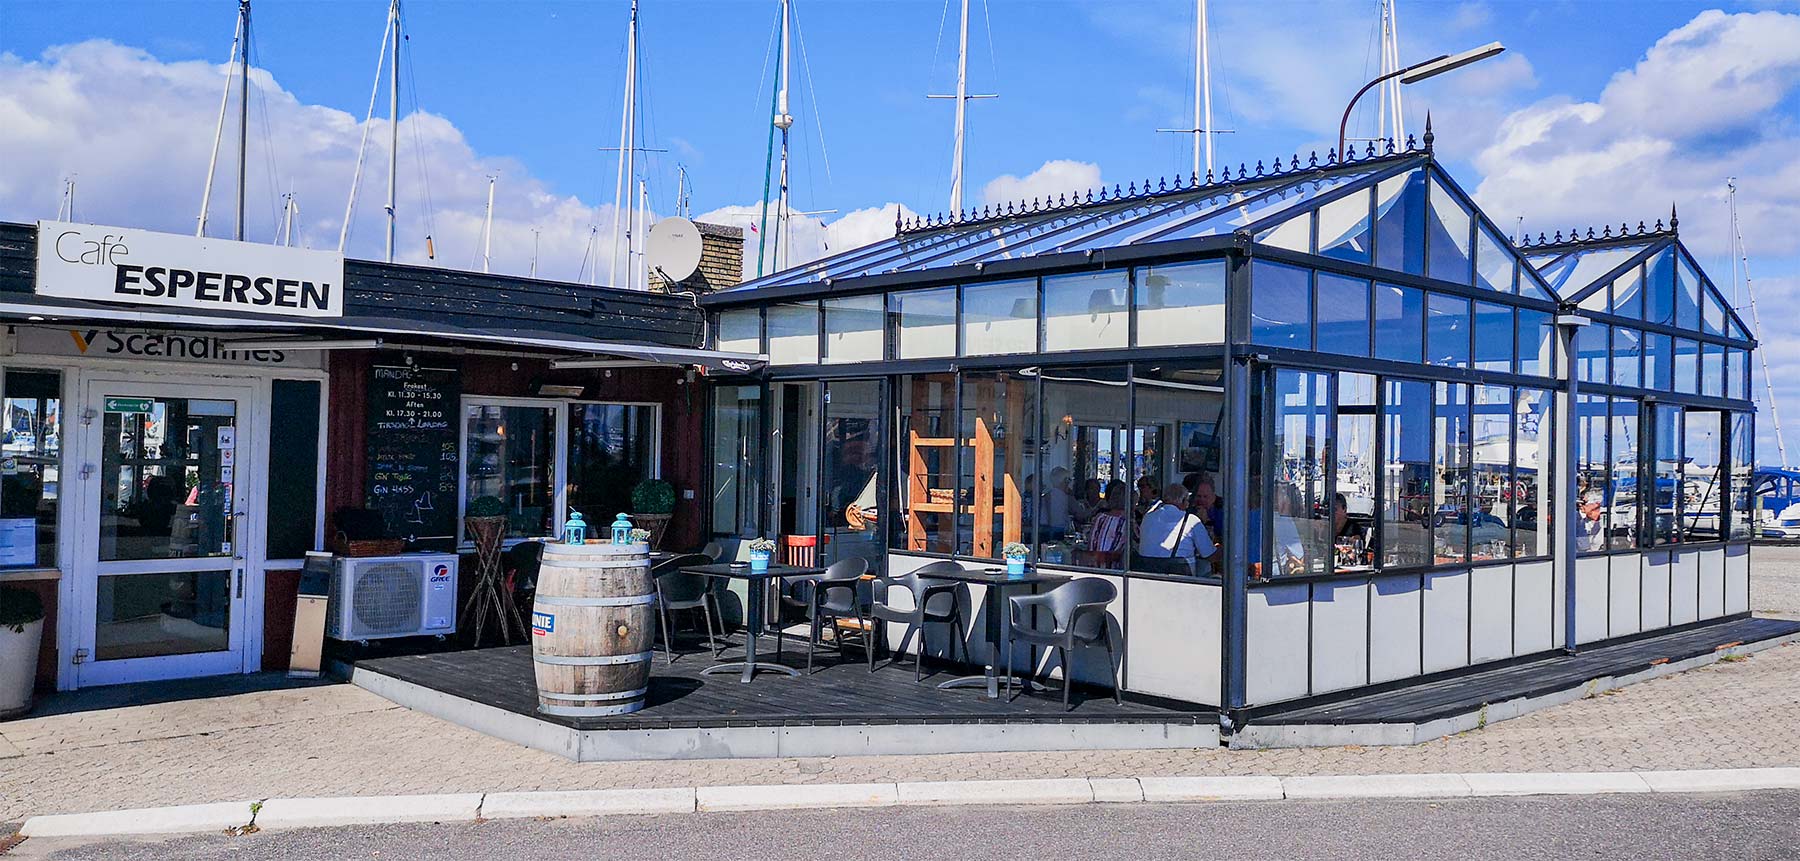 Den gamle færgeteminal har de sidste 20 år dannet rammerne for Café Espersen. Foto: Rasmus Mark Pedersen.